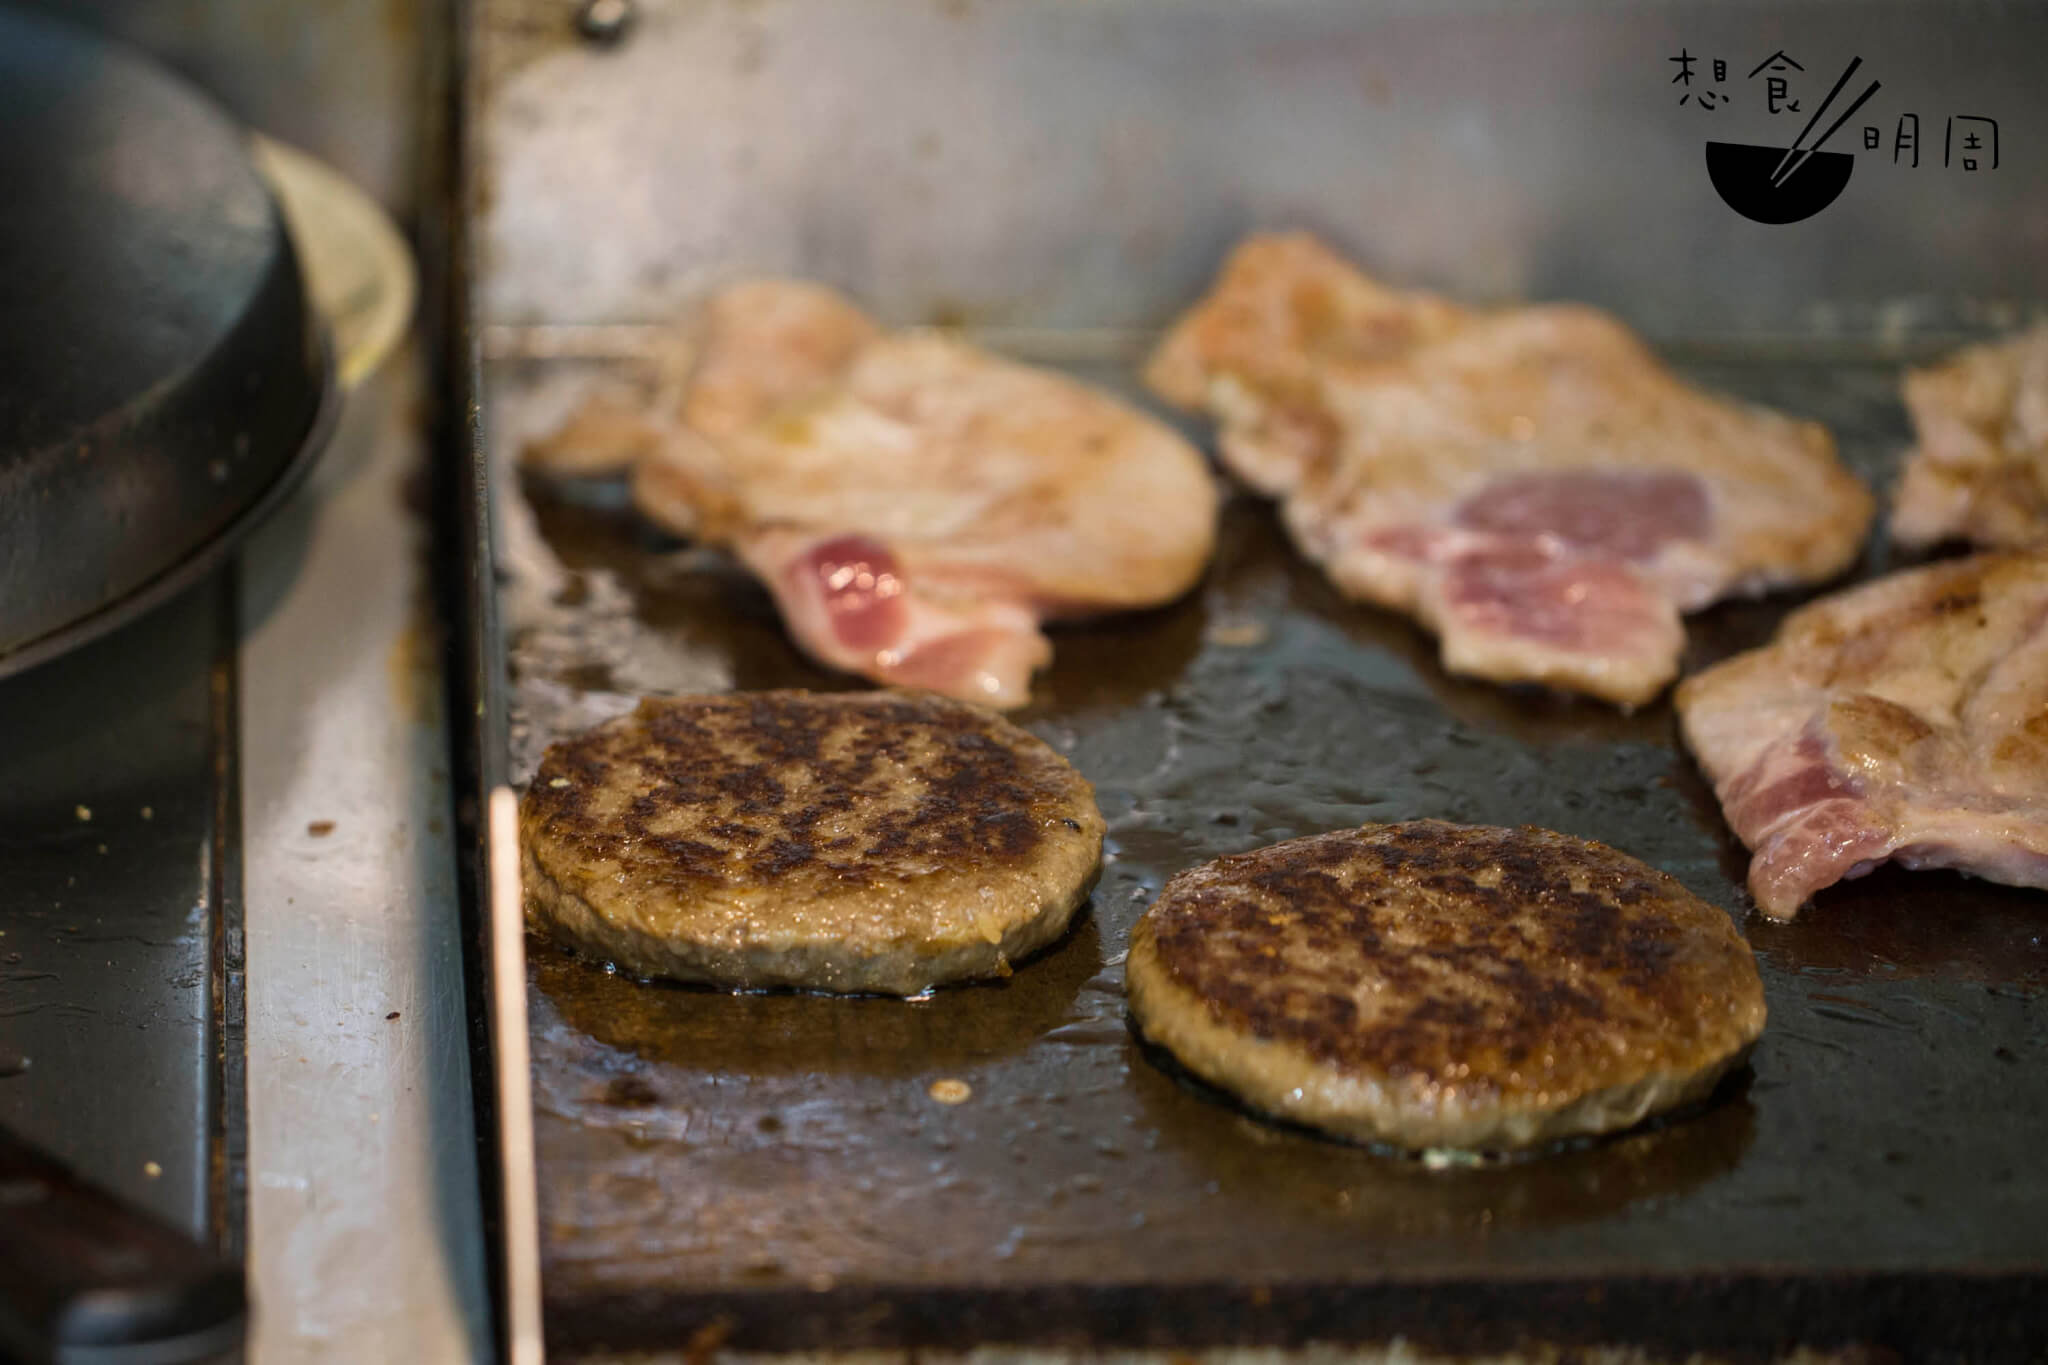 開放式廚房是新鮮即製的保證，可以看到漢堡包即叫即做，漢堡扒在扒爐上煎得焦香。